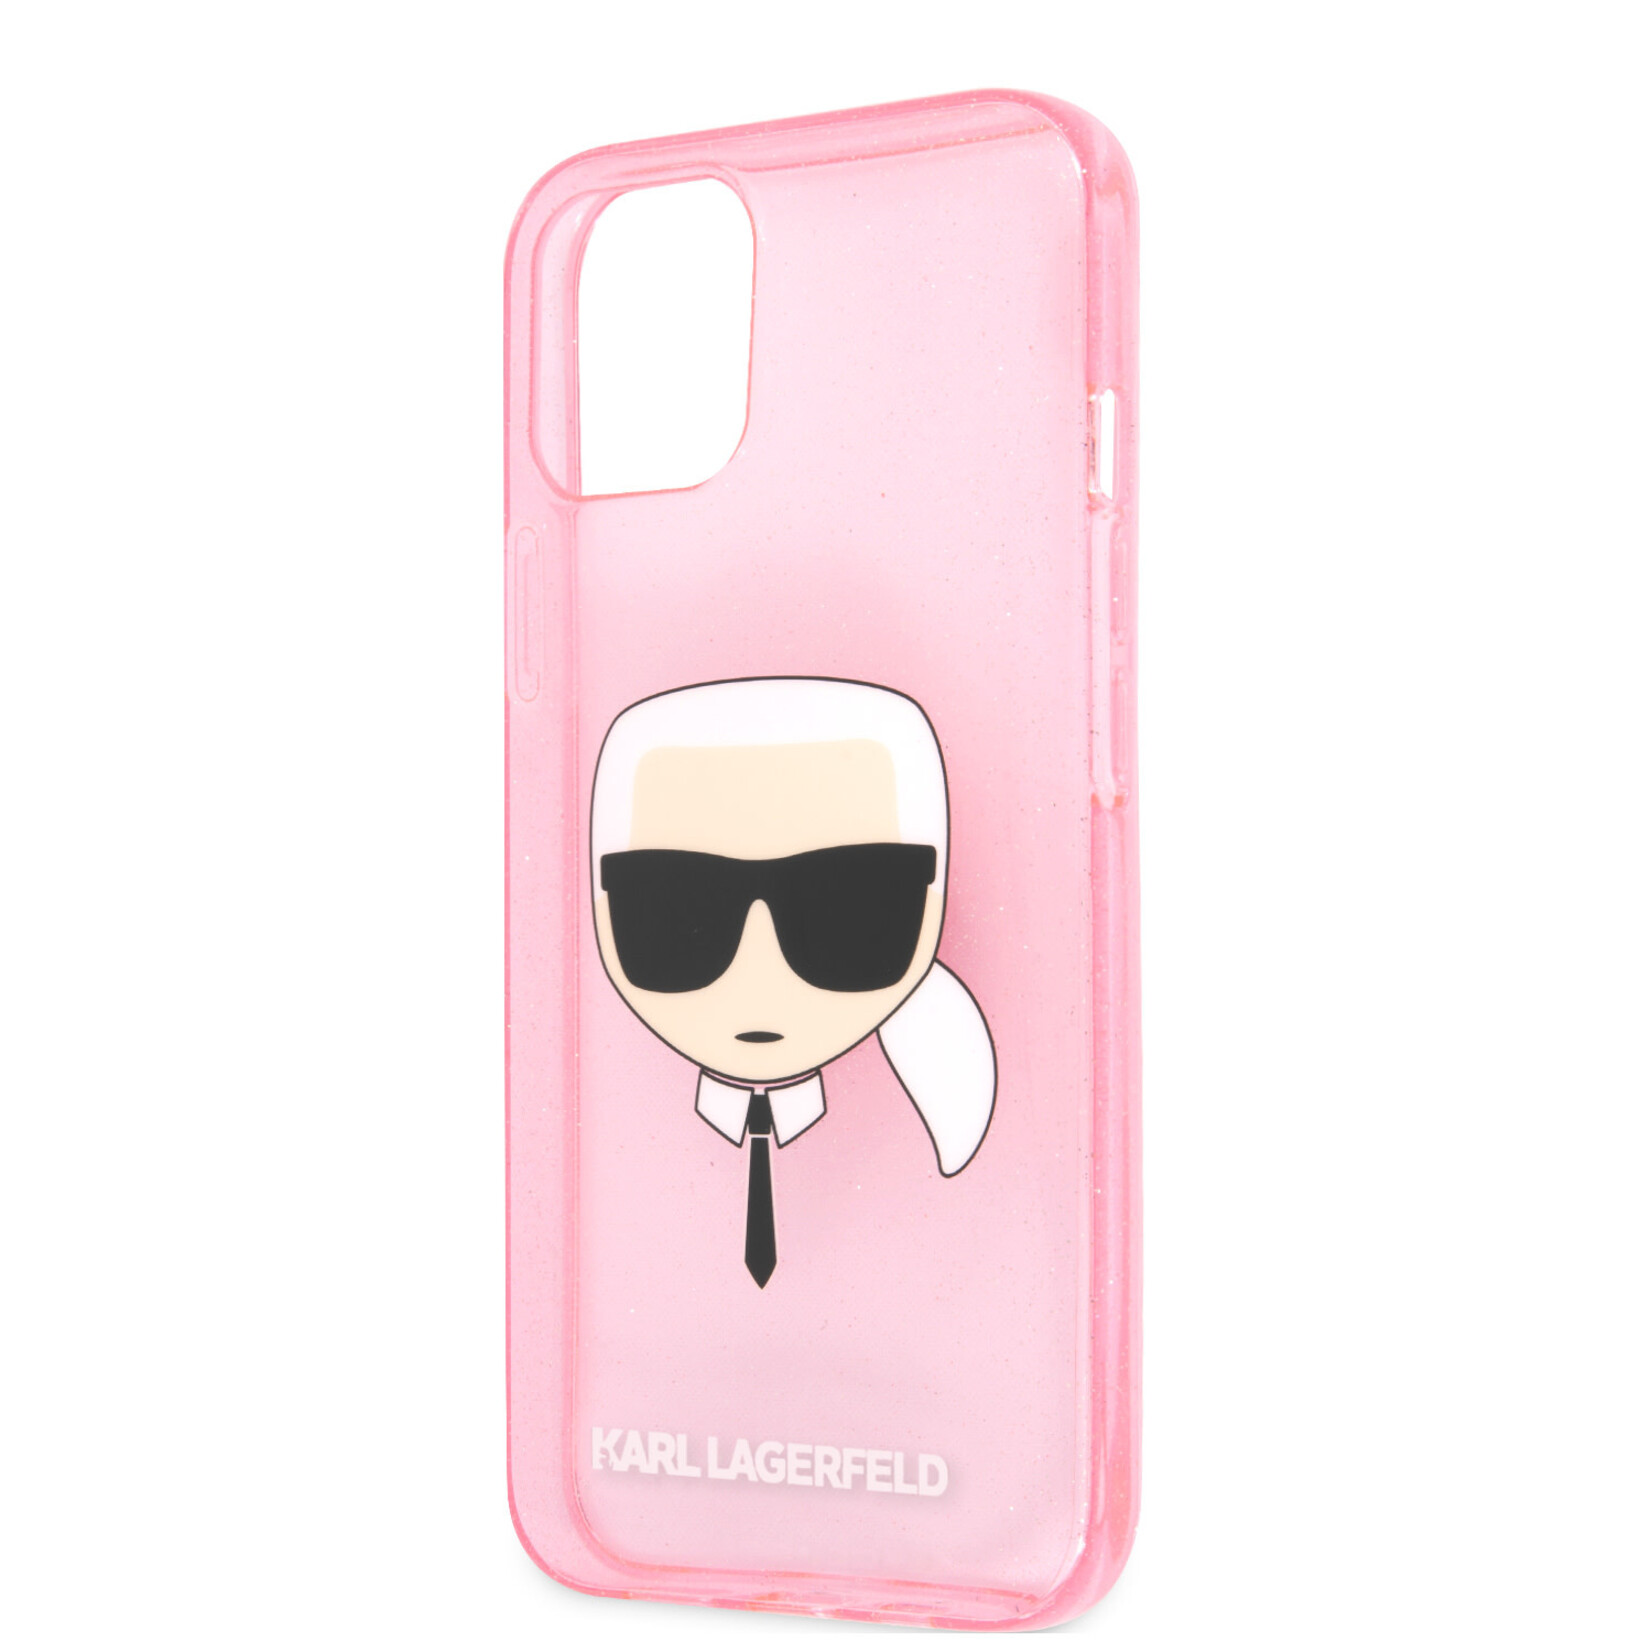 Karl Lagerfeld Karl Lagerfeld Transparante Roze TPU Back Cover Hoesje voor Apple iPhone 13 Mini - Bescherm je Telefoon!